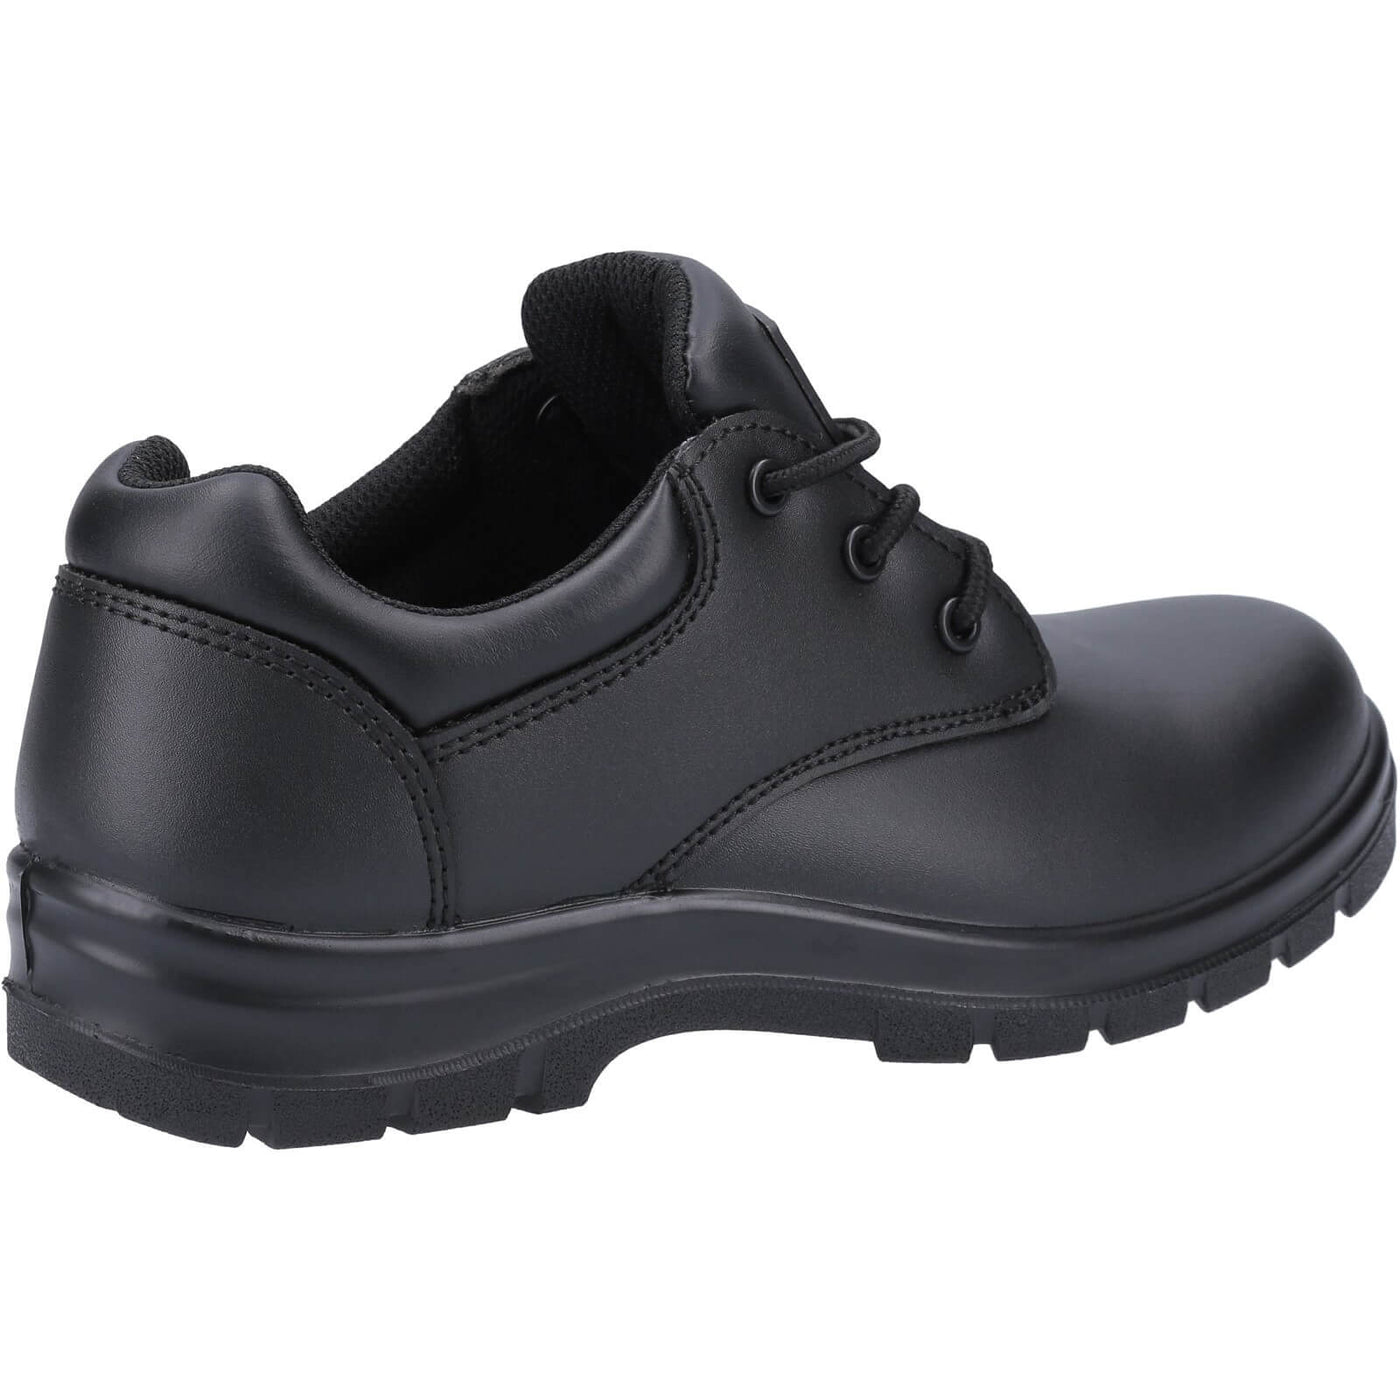 Amblers AS715C Safety Shoes Black 2#colour_black